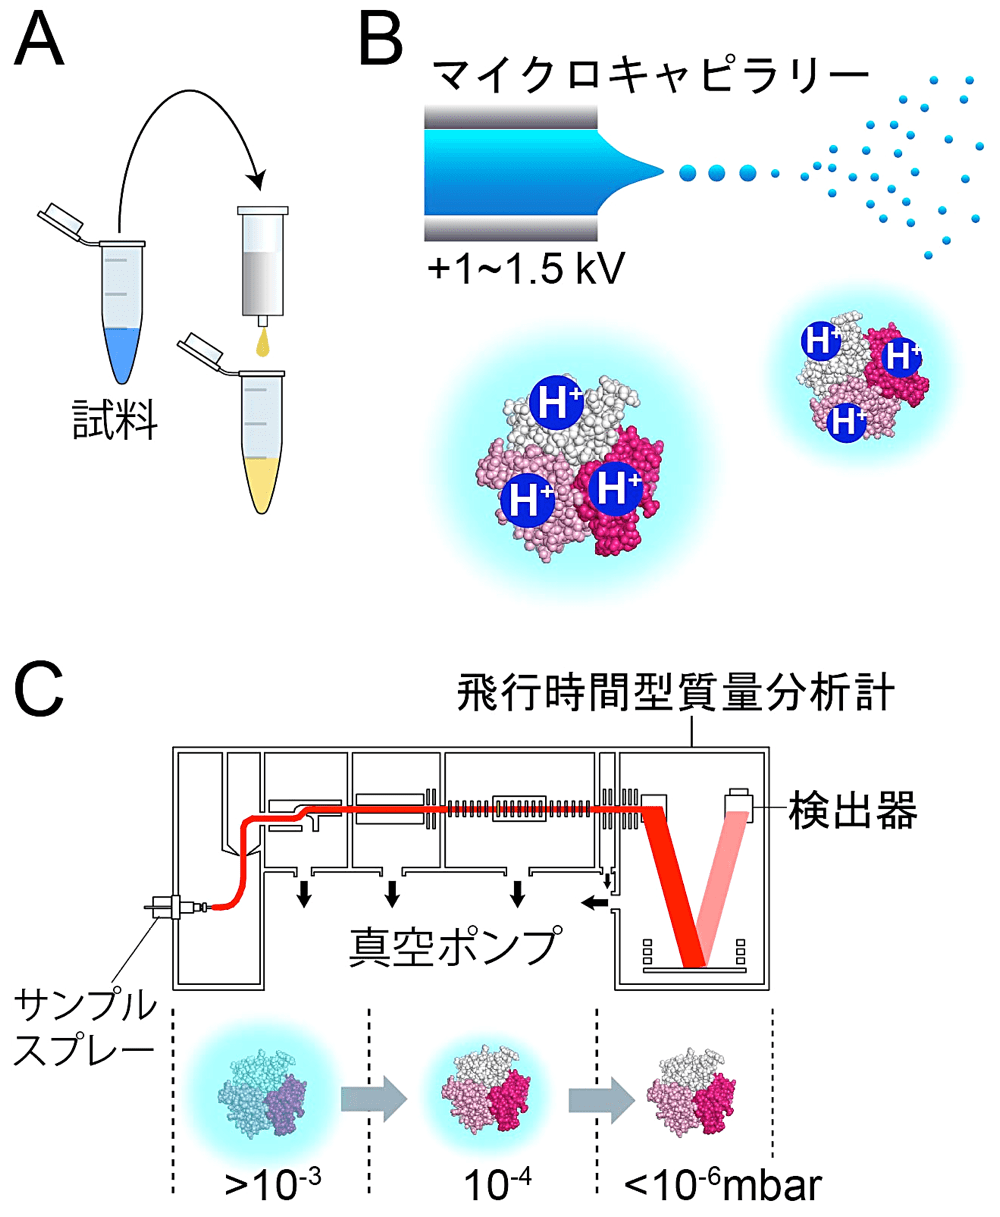 図2：Native MS の概要と装置構成。（A）バッファー交換：スピンカラムで酢酸アンモニウムバッファーに置換する。（B）エレクトロスプレーイオン化：電場により装置側へ引きつけられた液面から液滴が切り離される。液滴は細分化しつつ装置内部へと飛行し、このとき蛋白質にプロトンが付加される。（C）脱溶媒和：真空度が制御されており、蛋白質は徐々に脱溶媒和される。